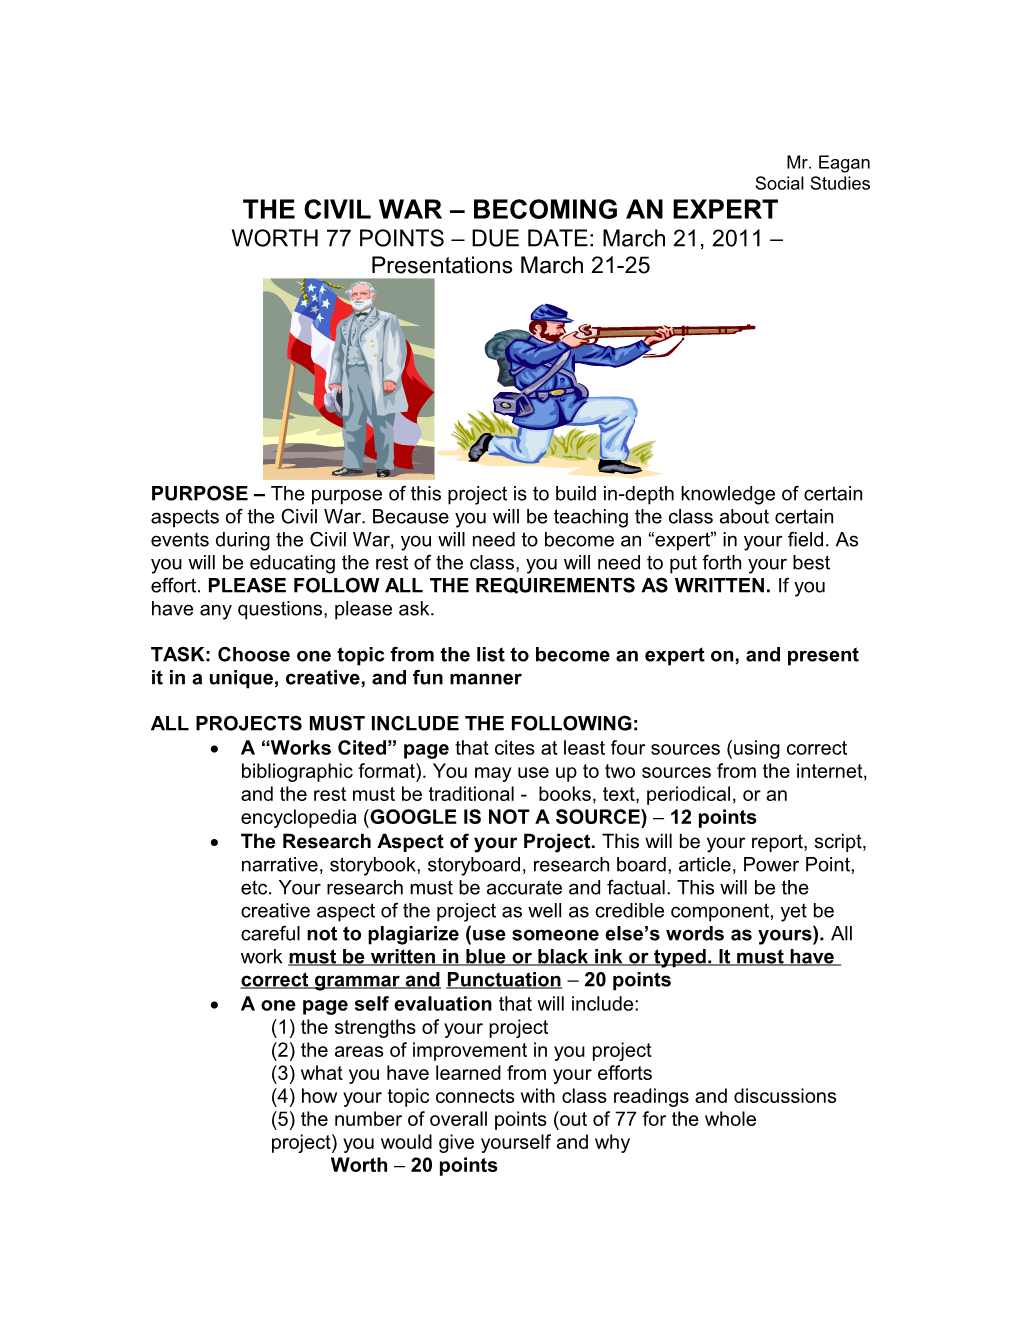 Civil War Expert Groups